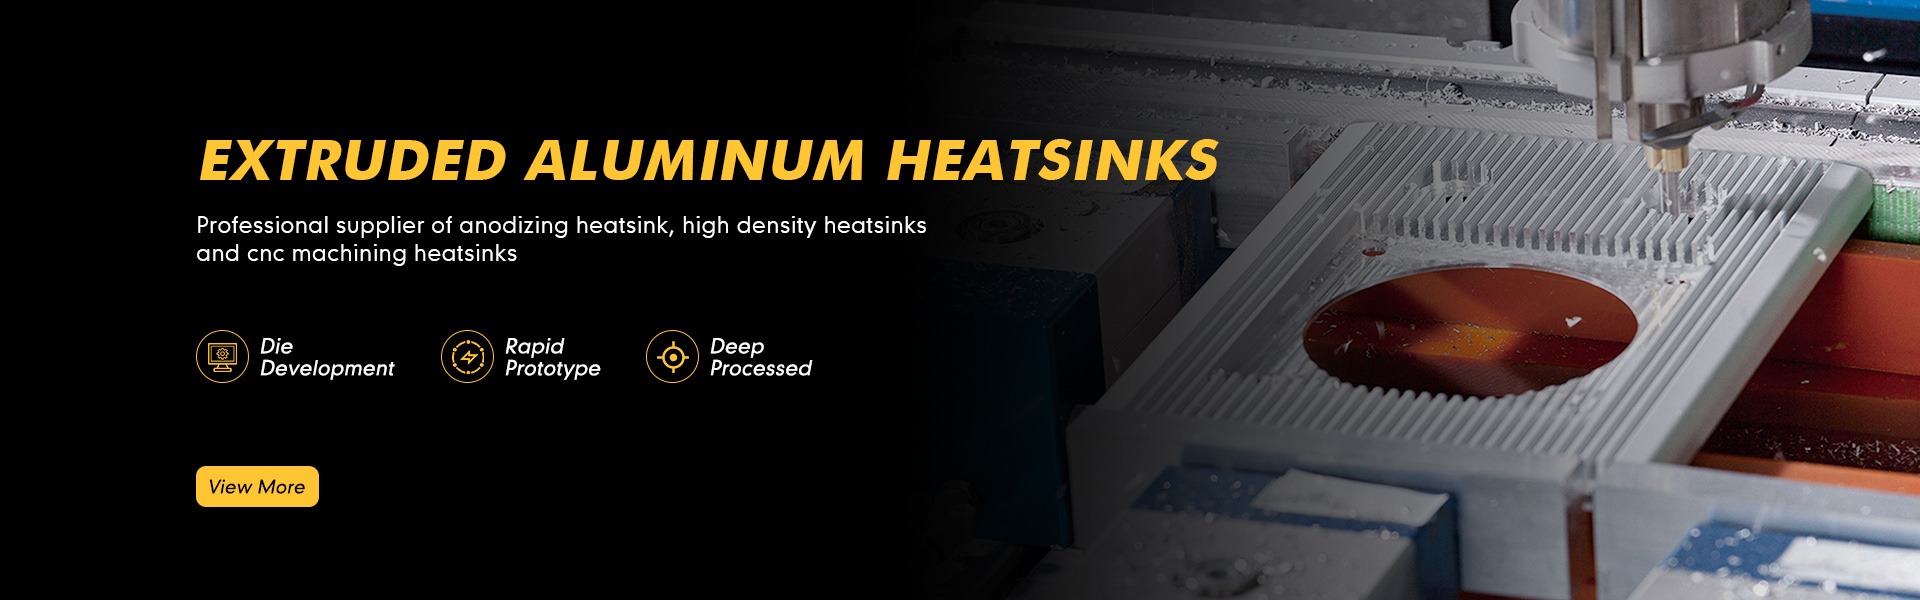 Aluminum heat sink